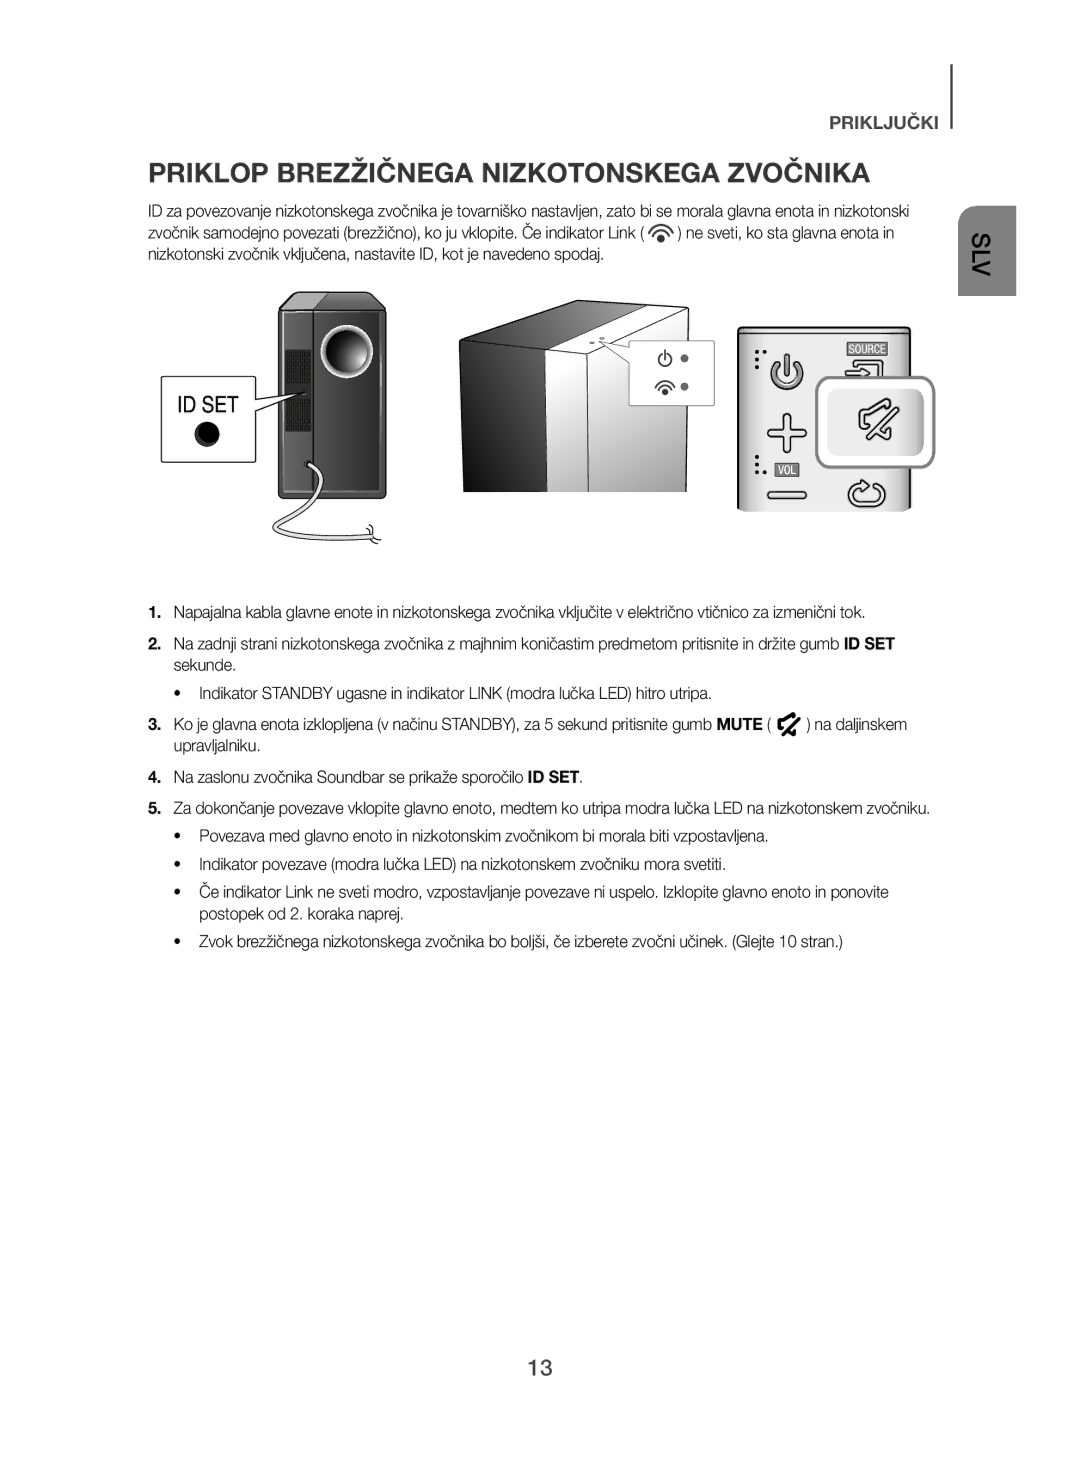 Samsung HW-H450/XN, HW-H450/TK, HW-H450/EN, HW-H450/ZF, HW-H450/XE manual Priklop Brezžičnega Nizkotonskega Zvočnika 